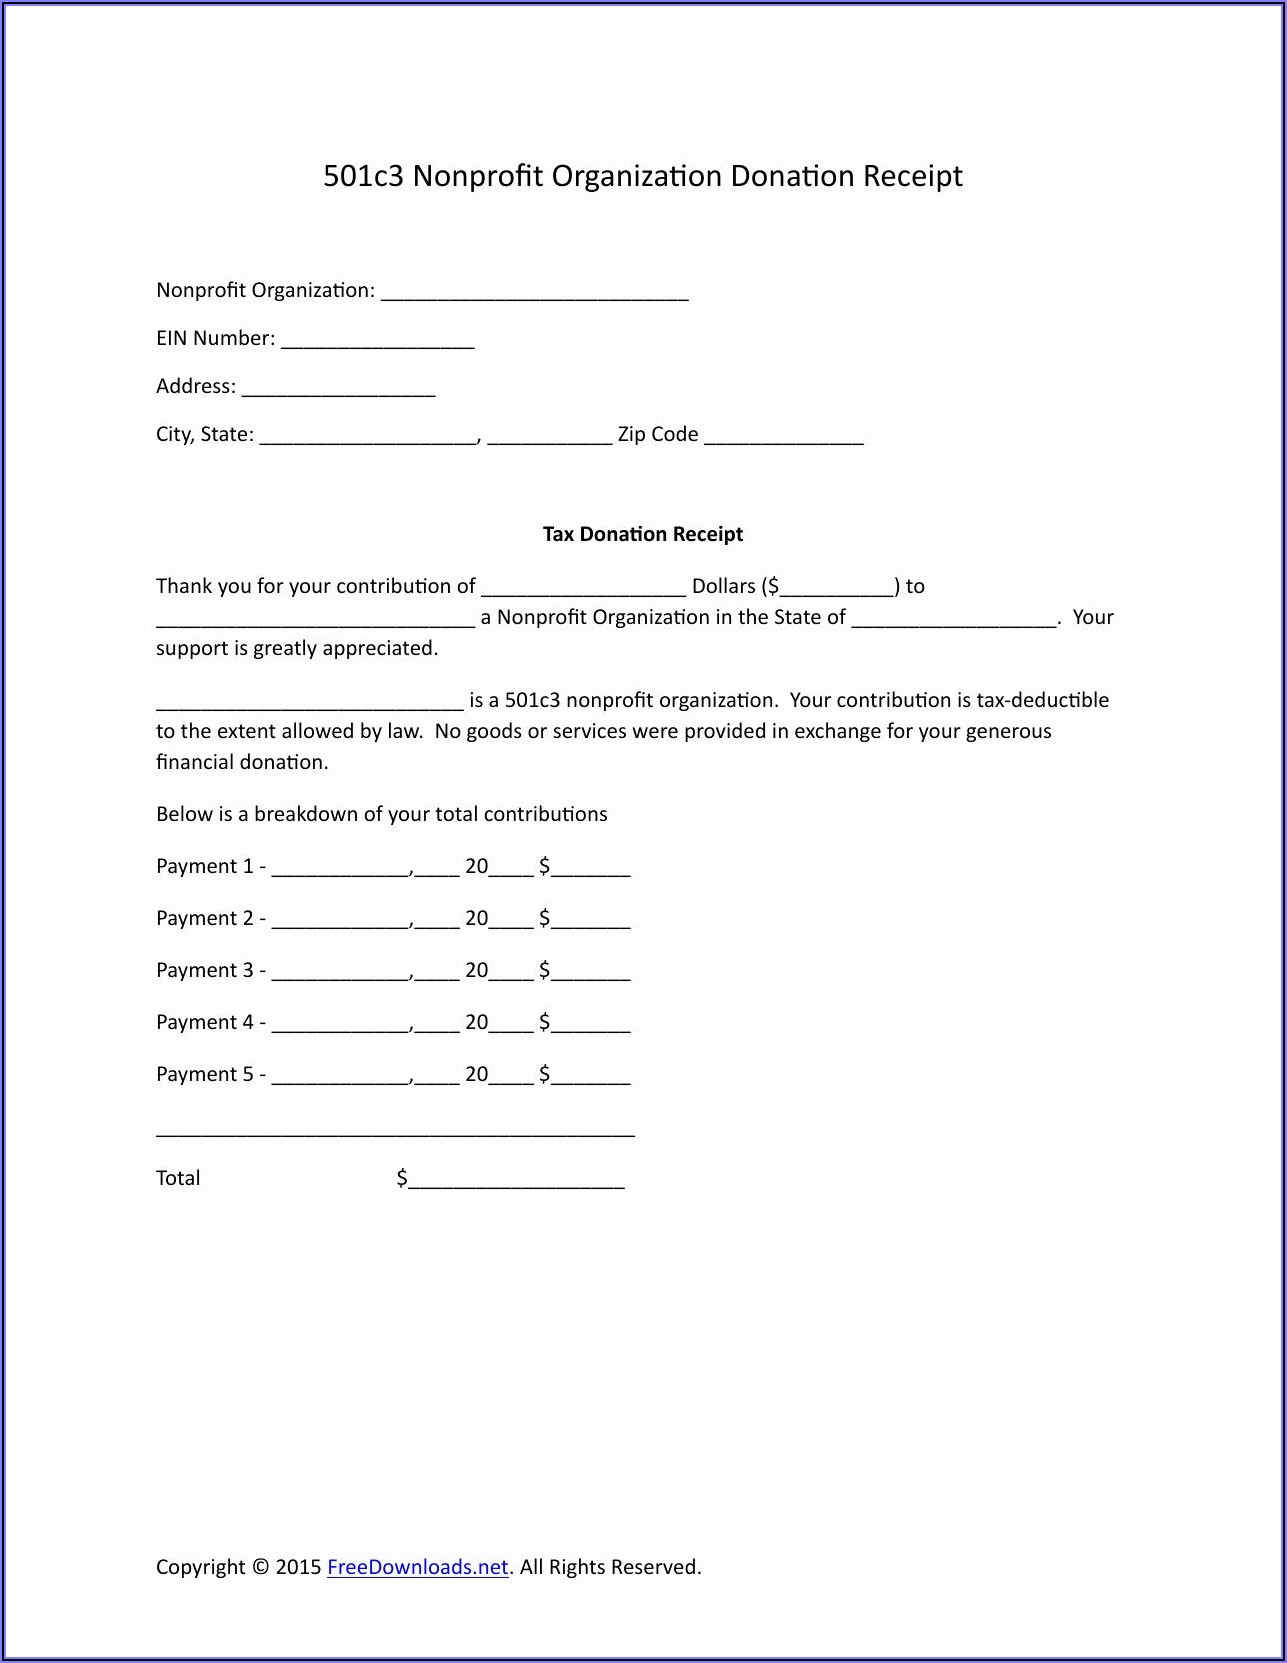 501c3 Donation Receipt Form